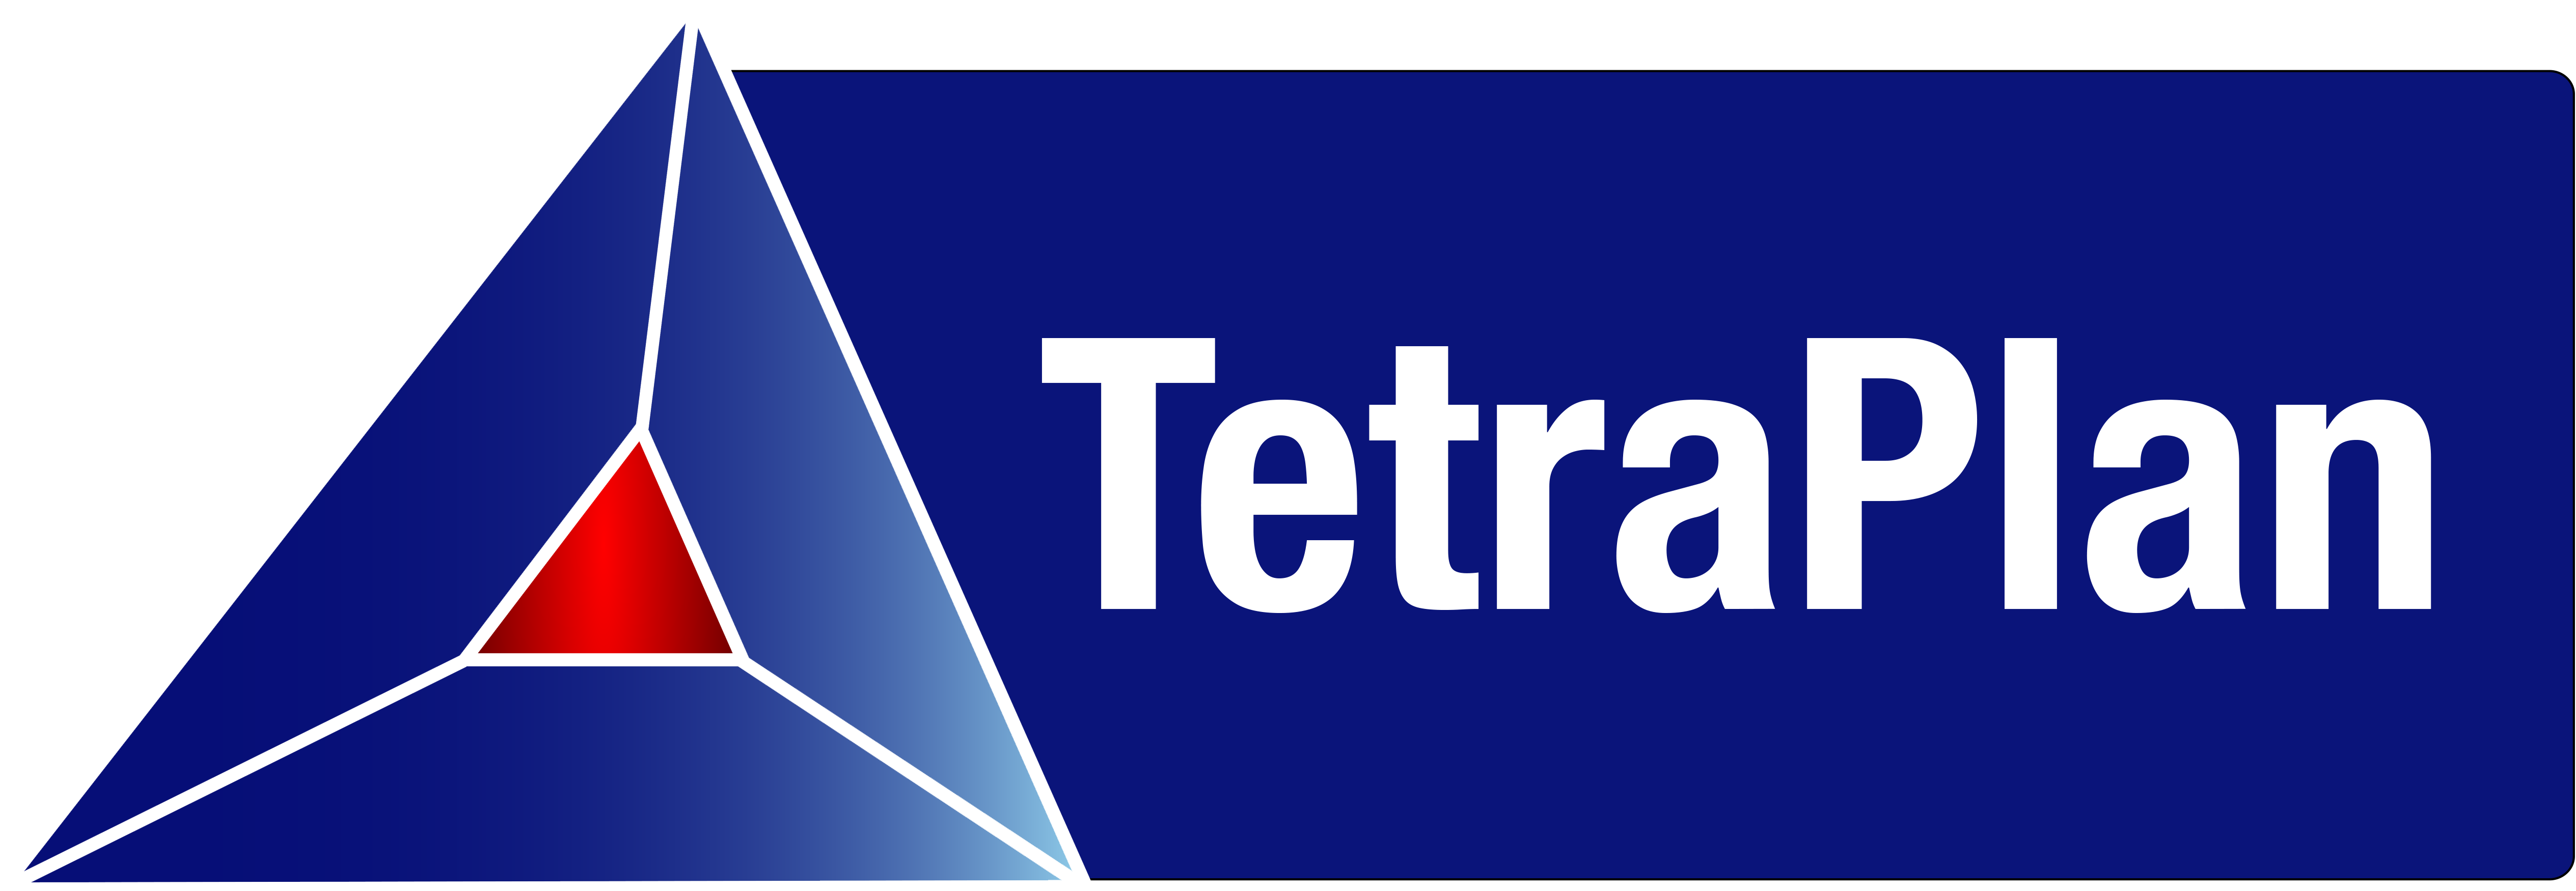 Tetraplan